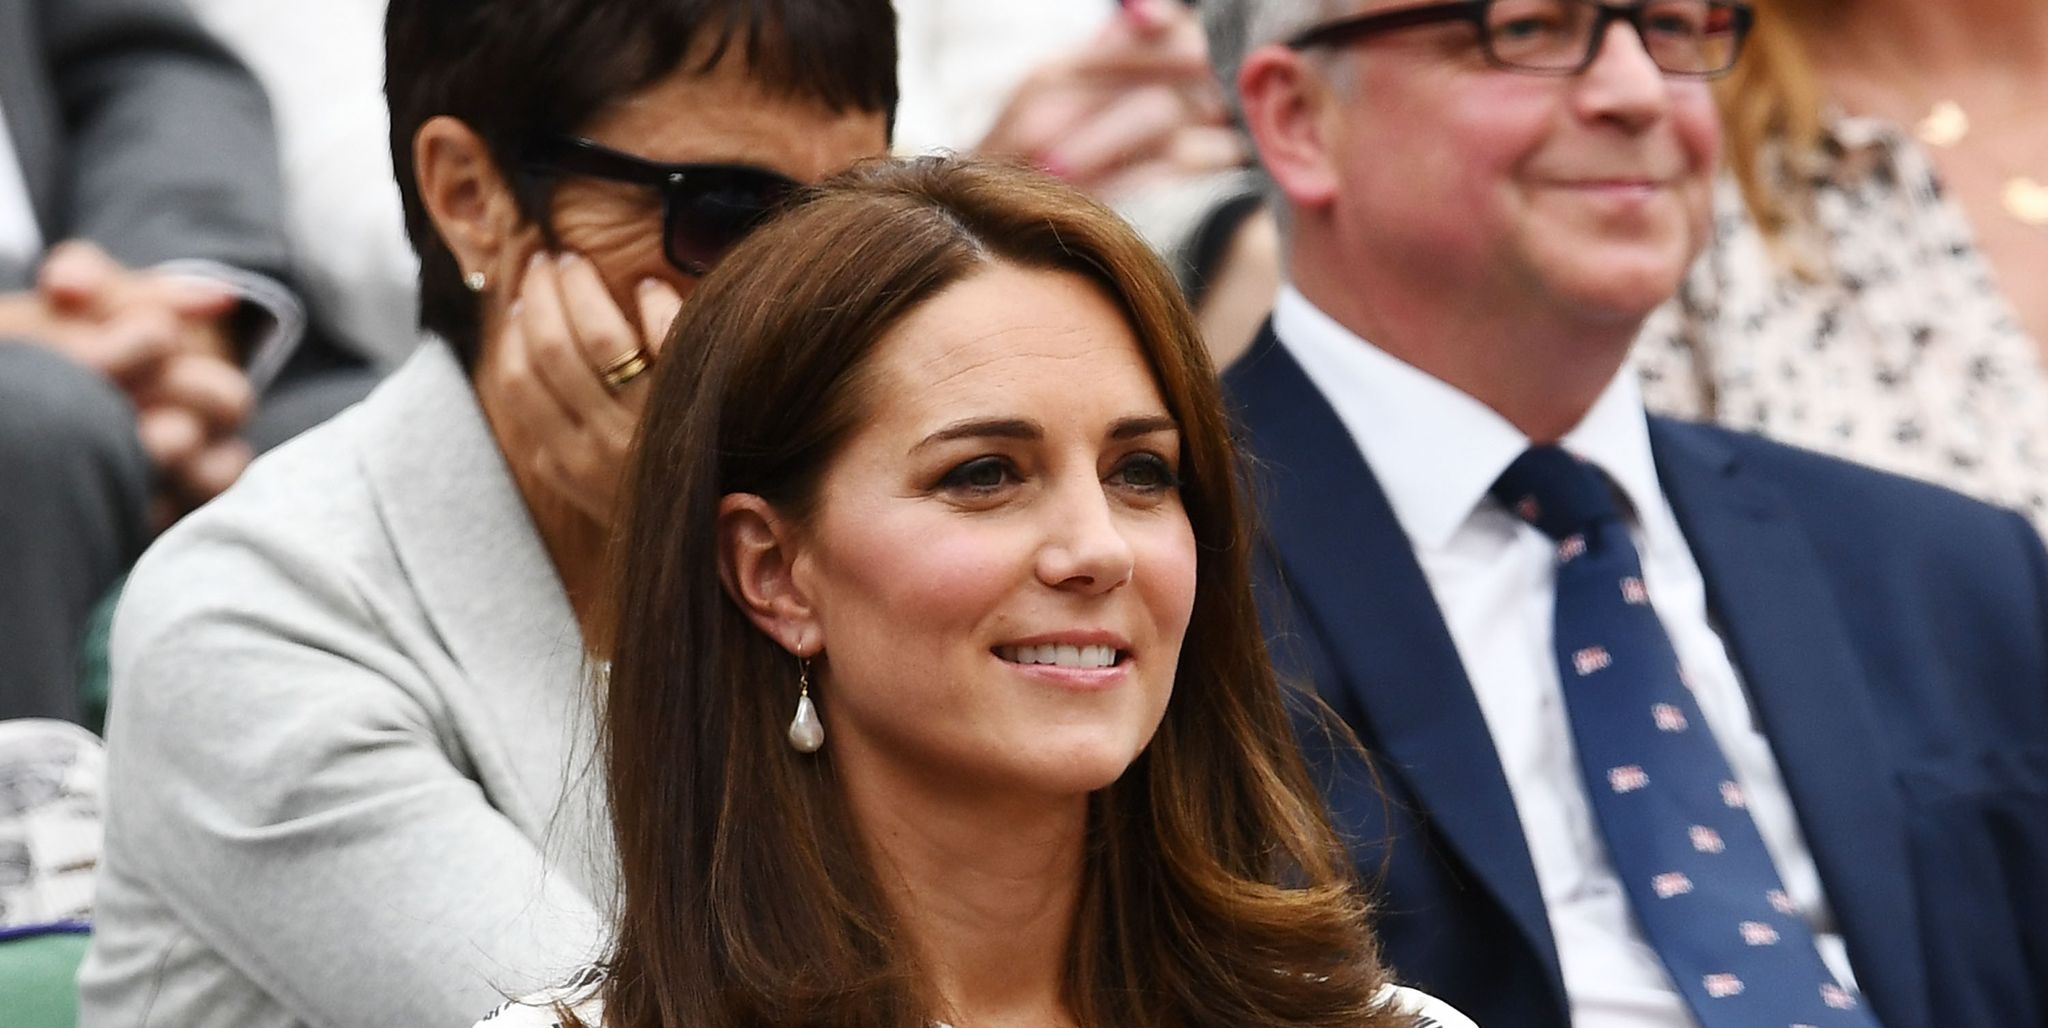 Kate Middleton at Wimbledon 2018